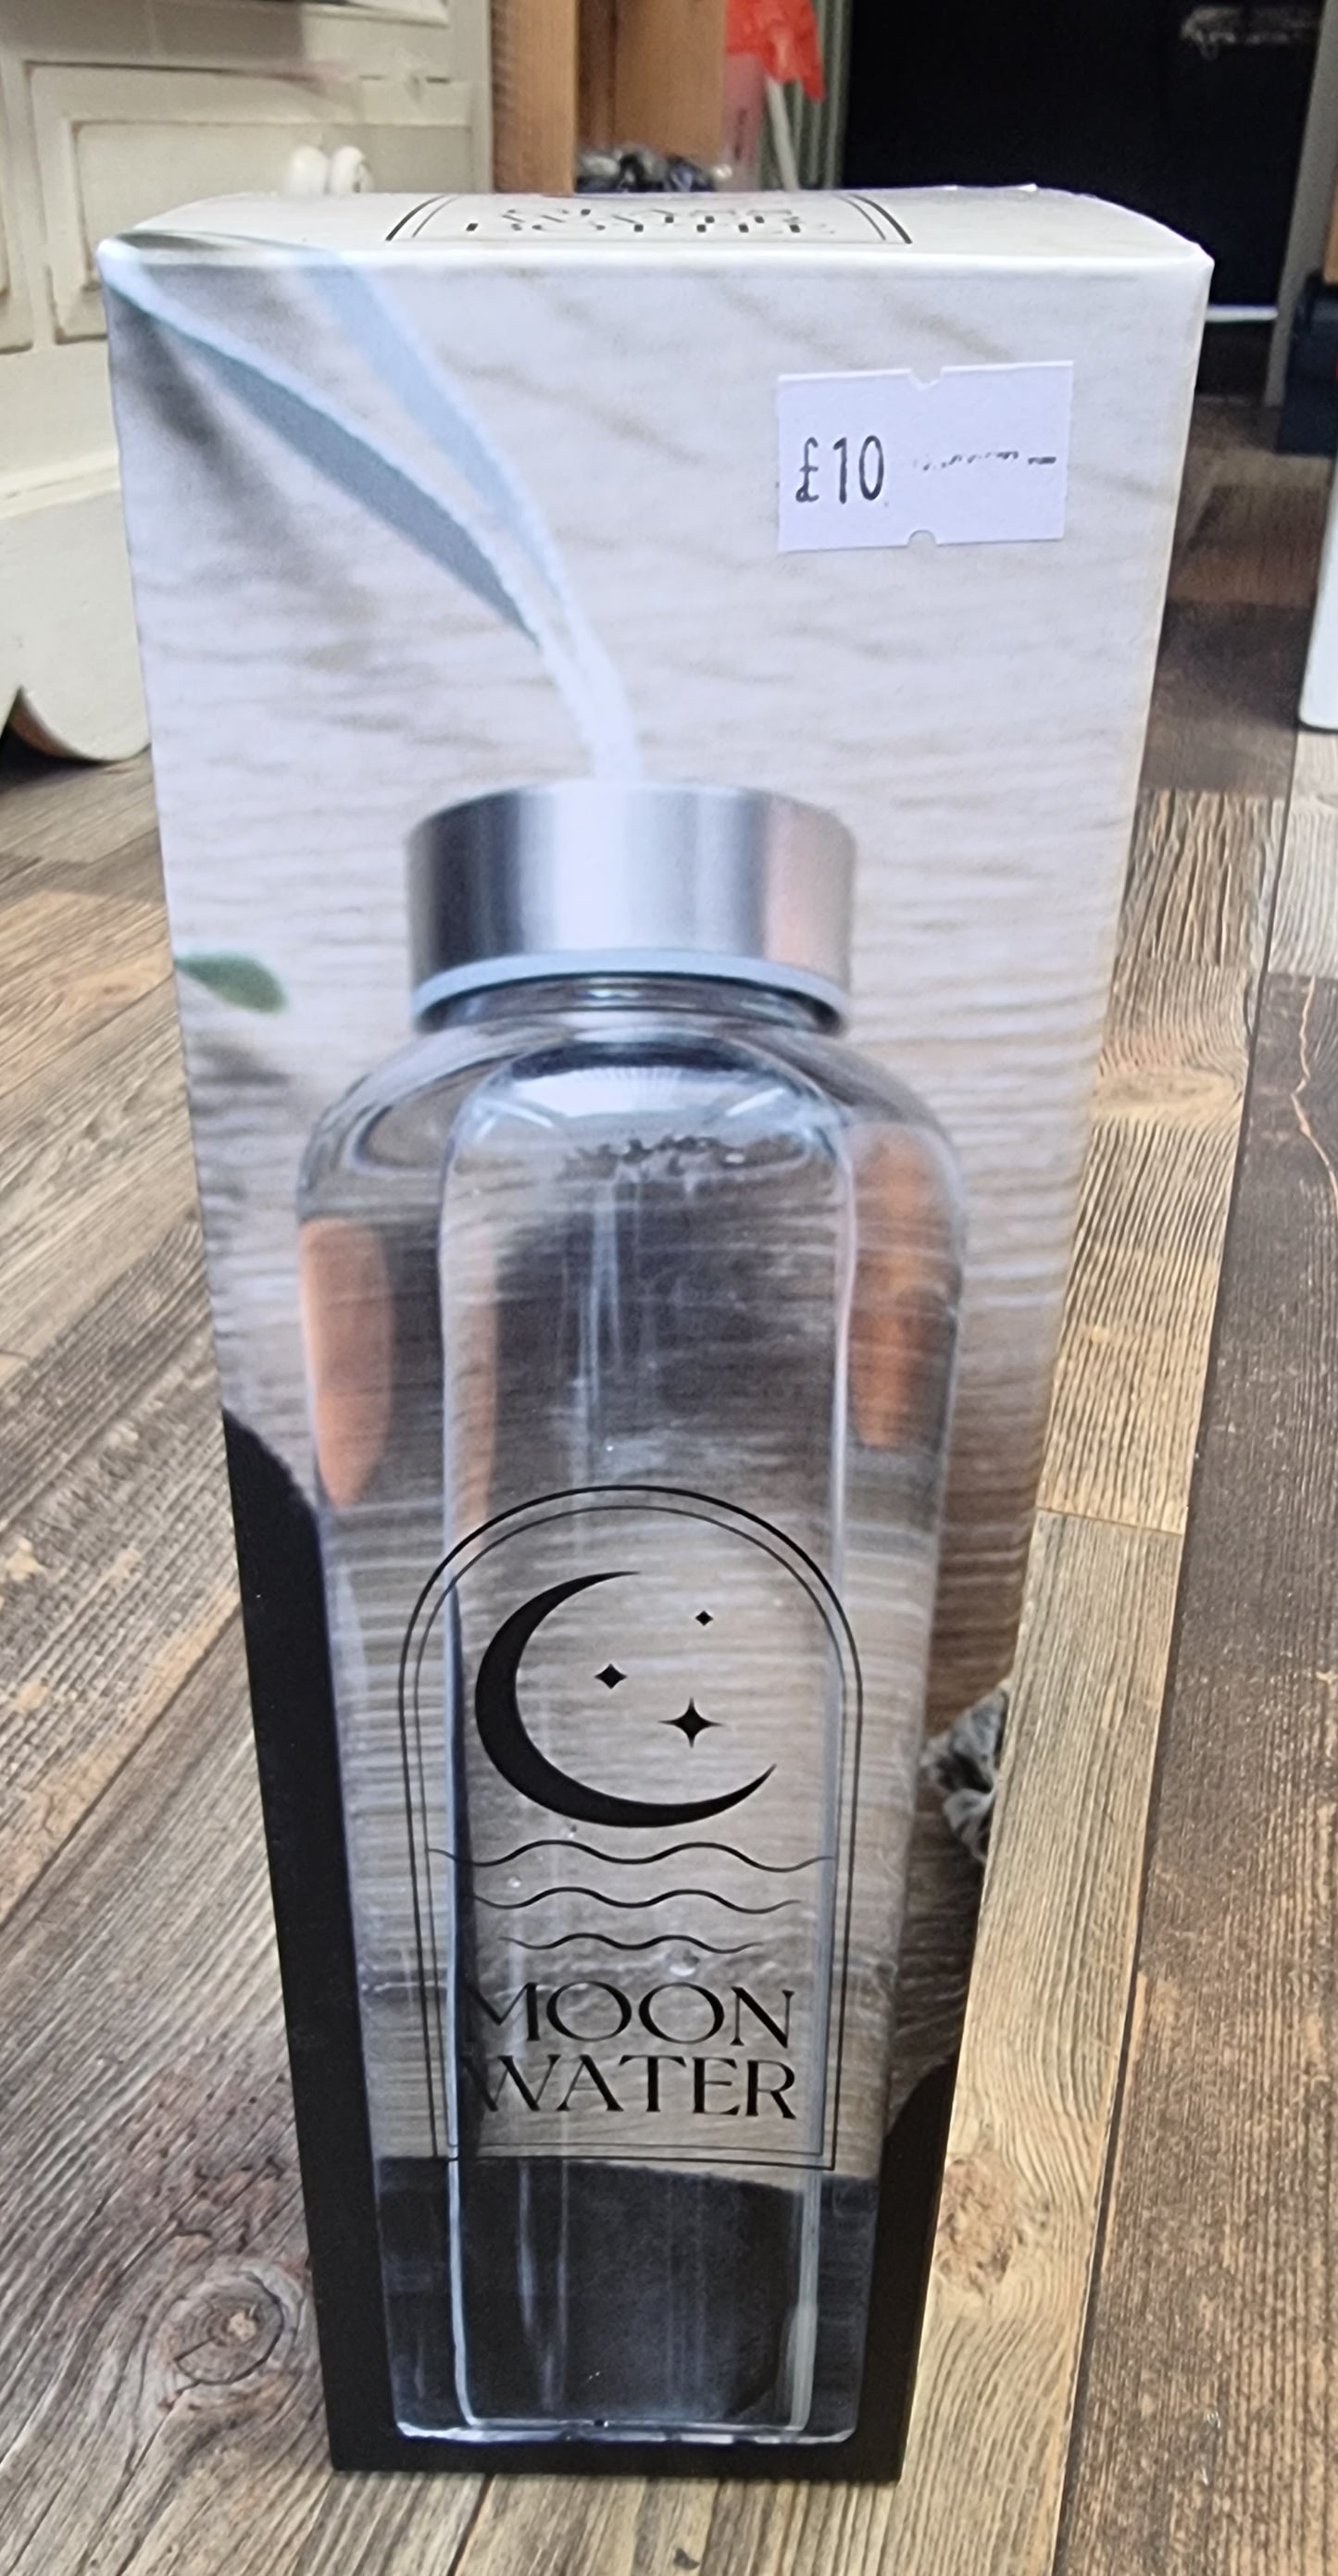 Moon water glass bottle